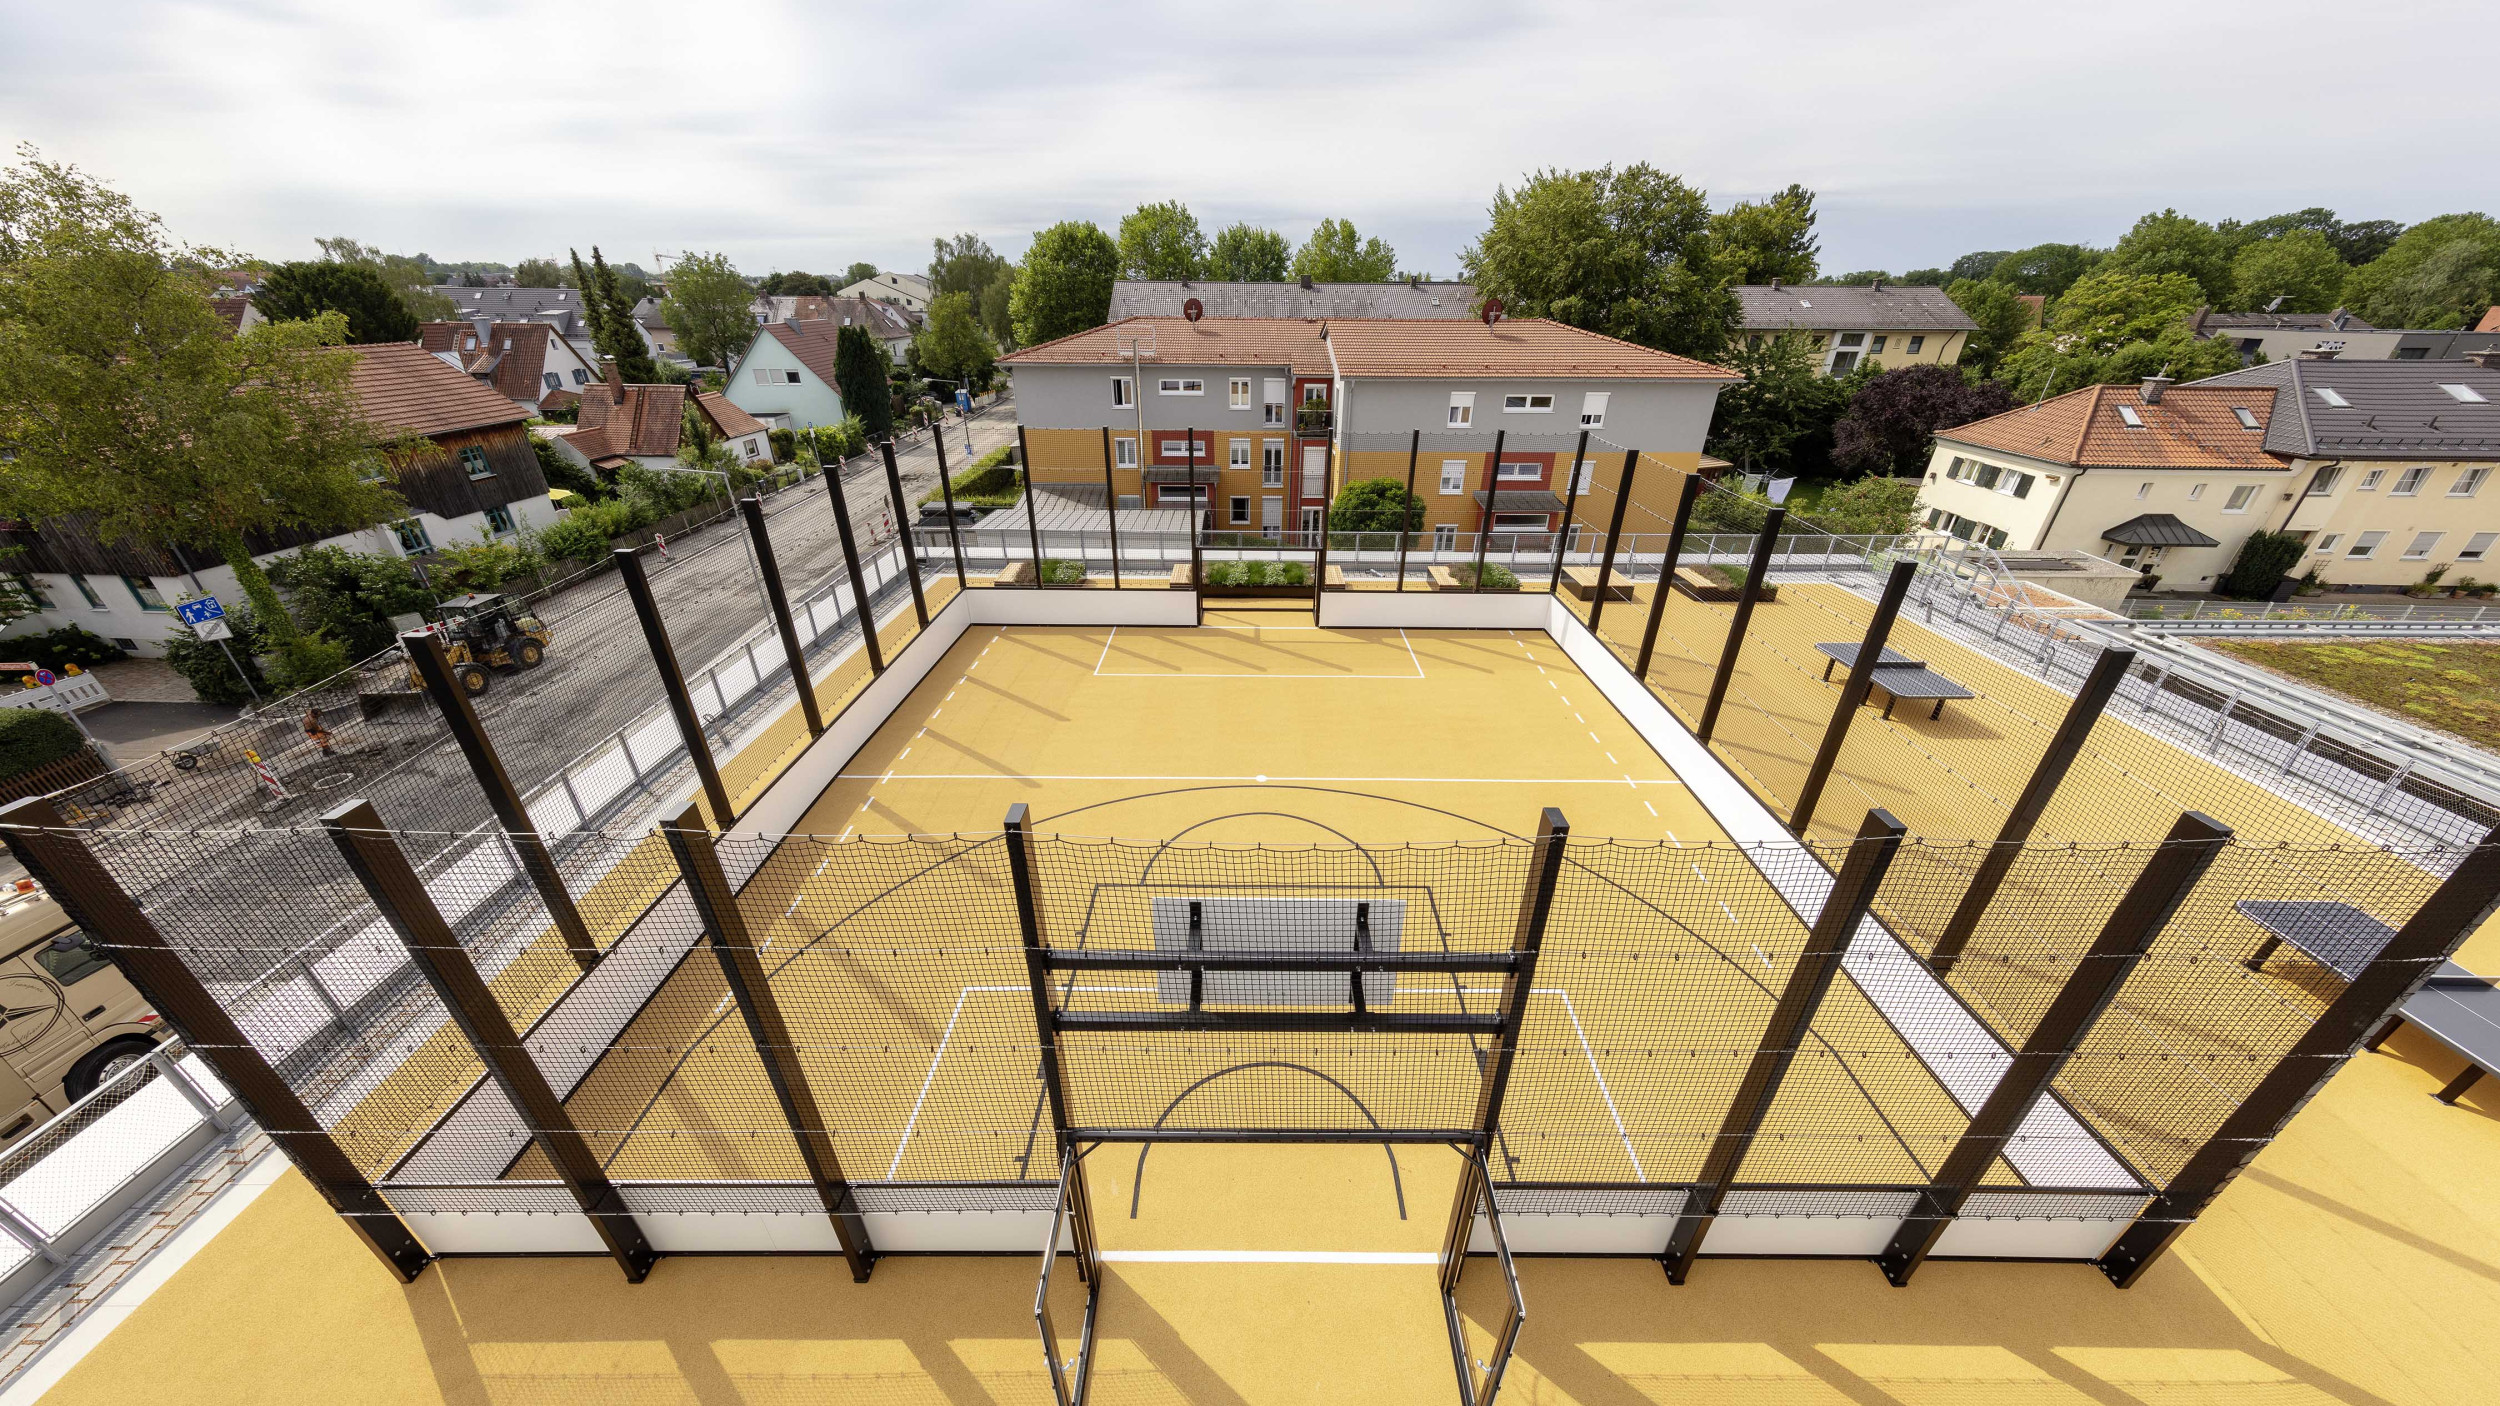 Außenperspektive von einem Sportcourt mit gelbem Boden auf dem Dach der Sporthalle.